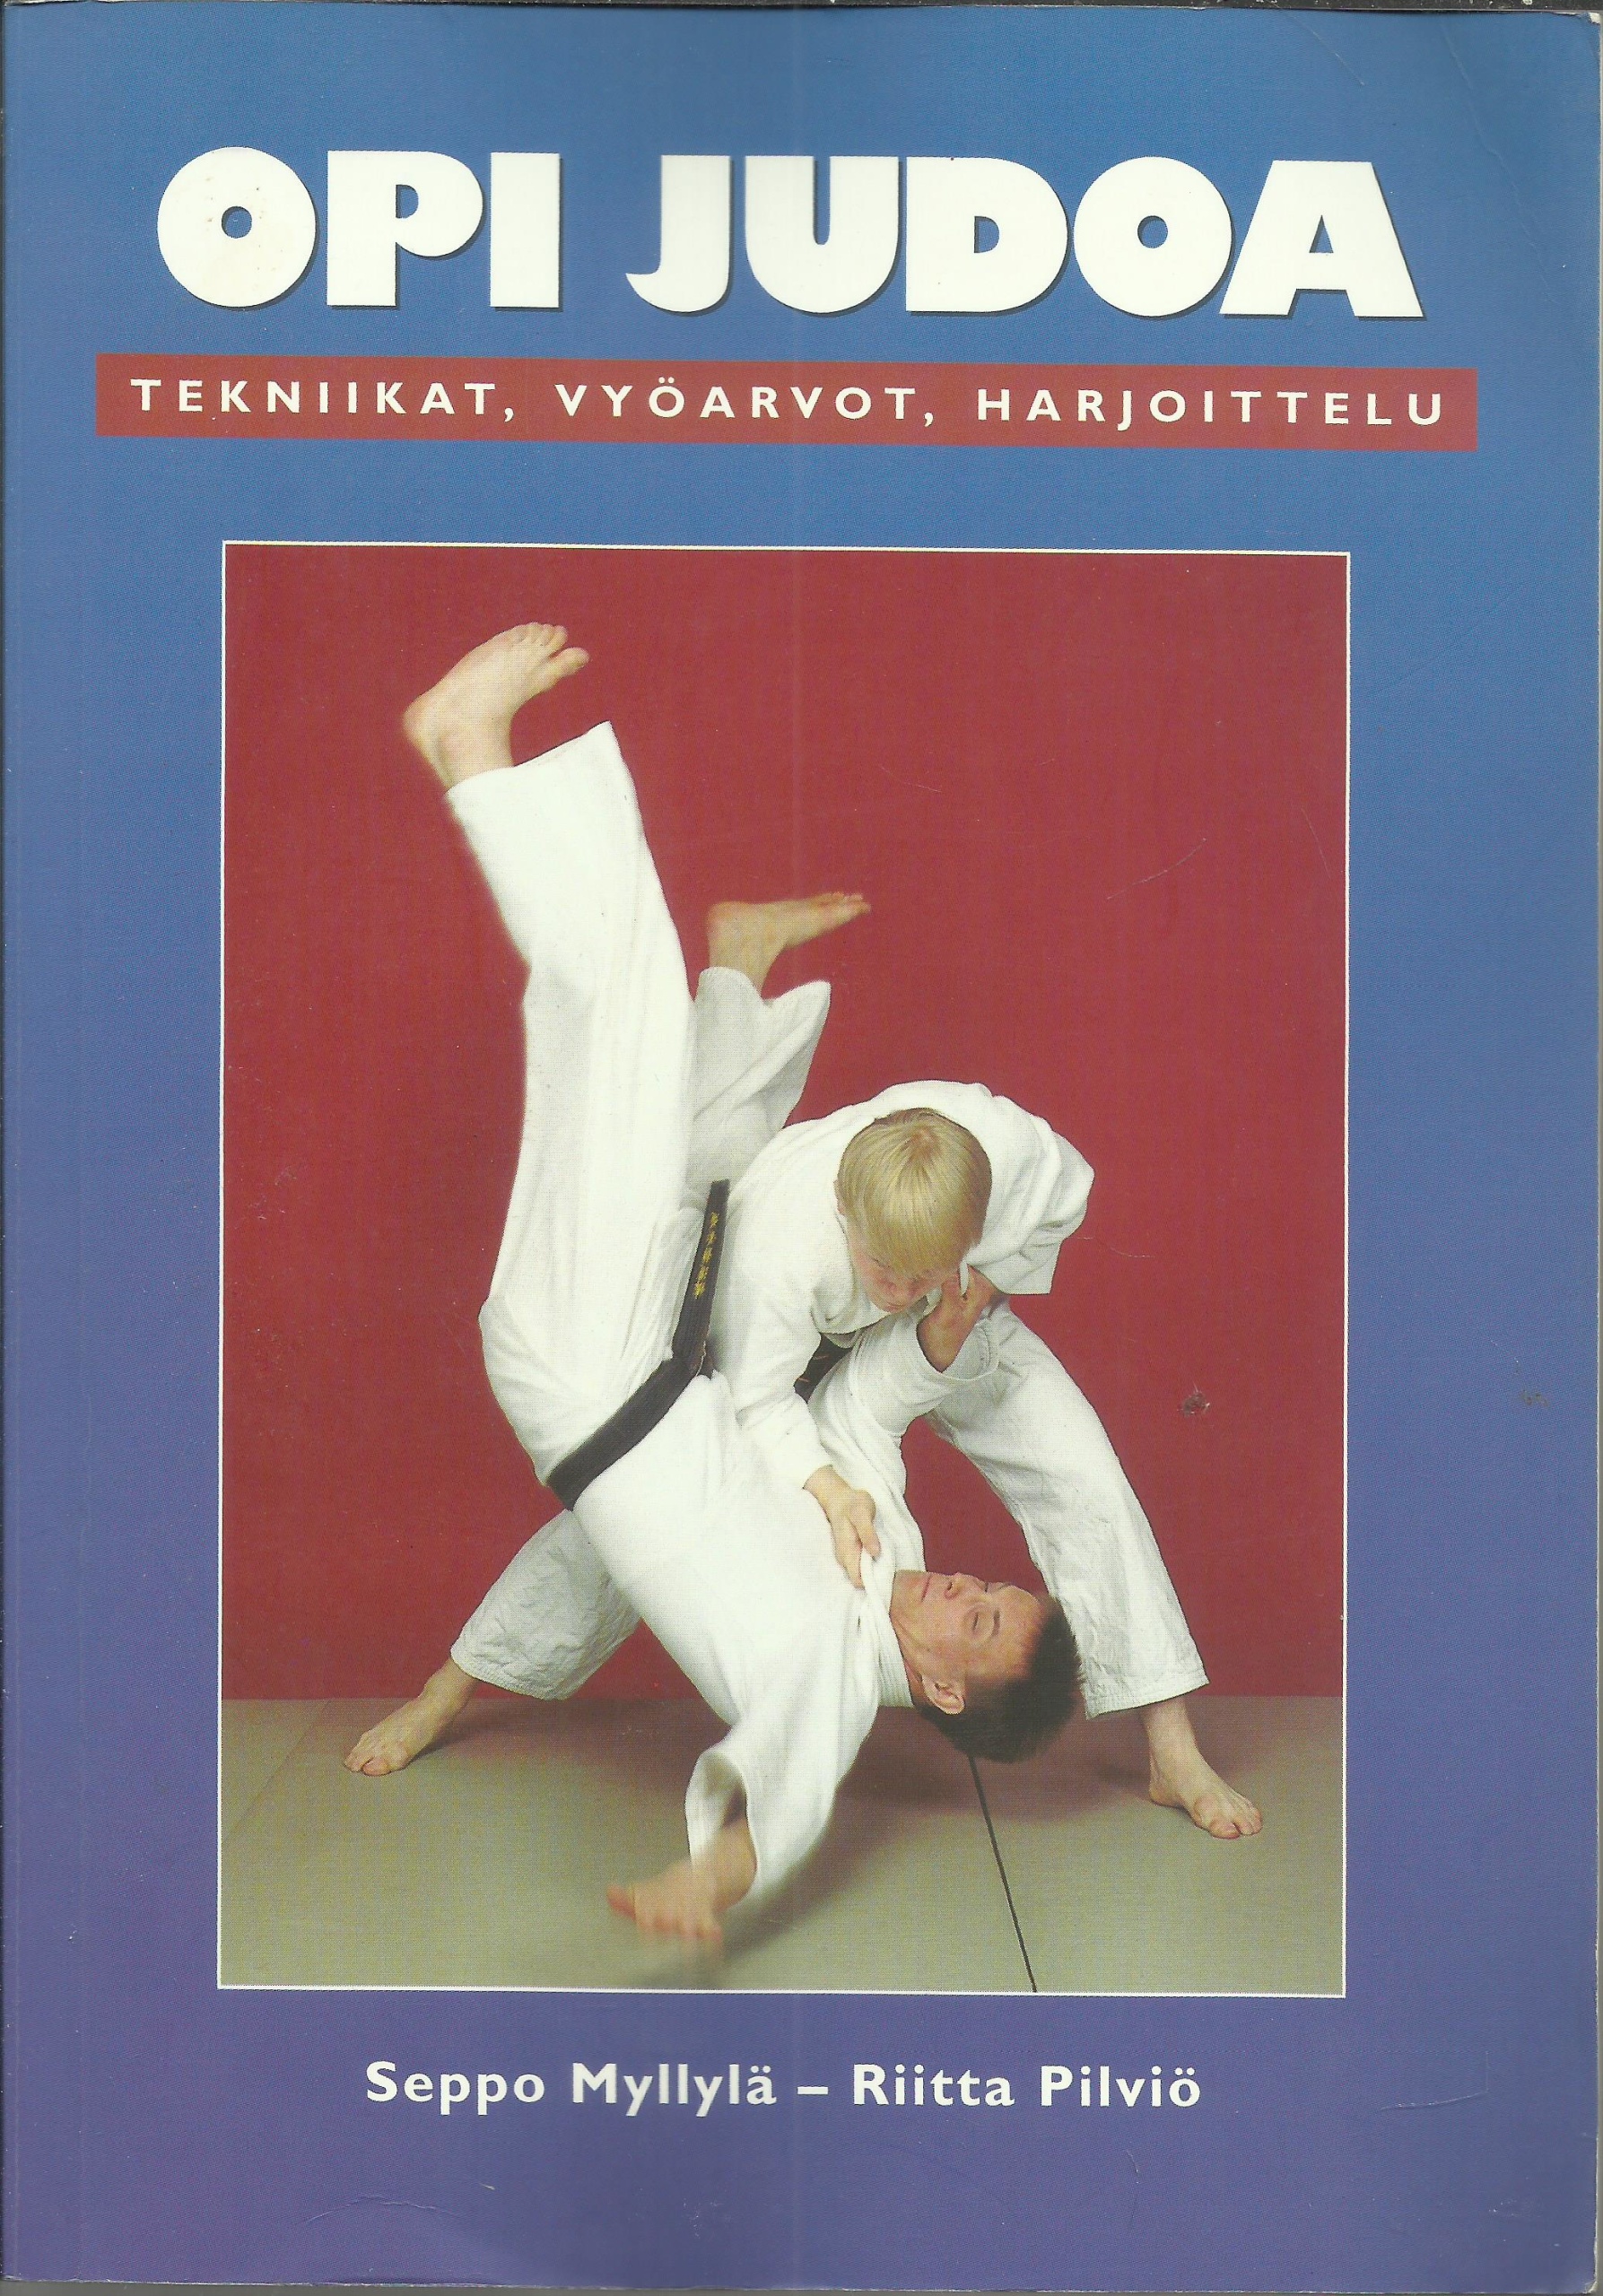 Opi judoa